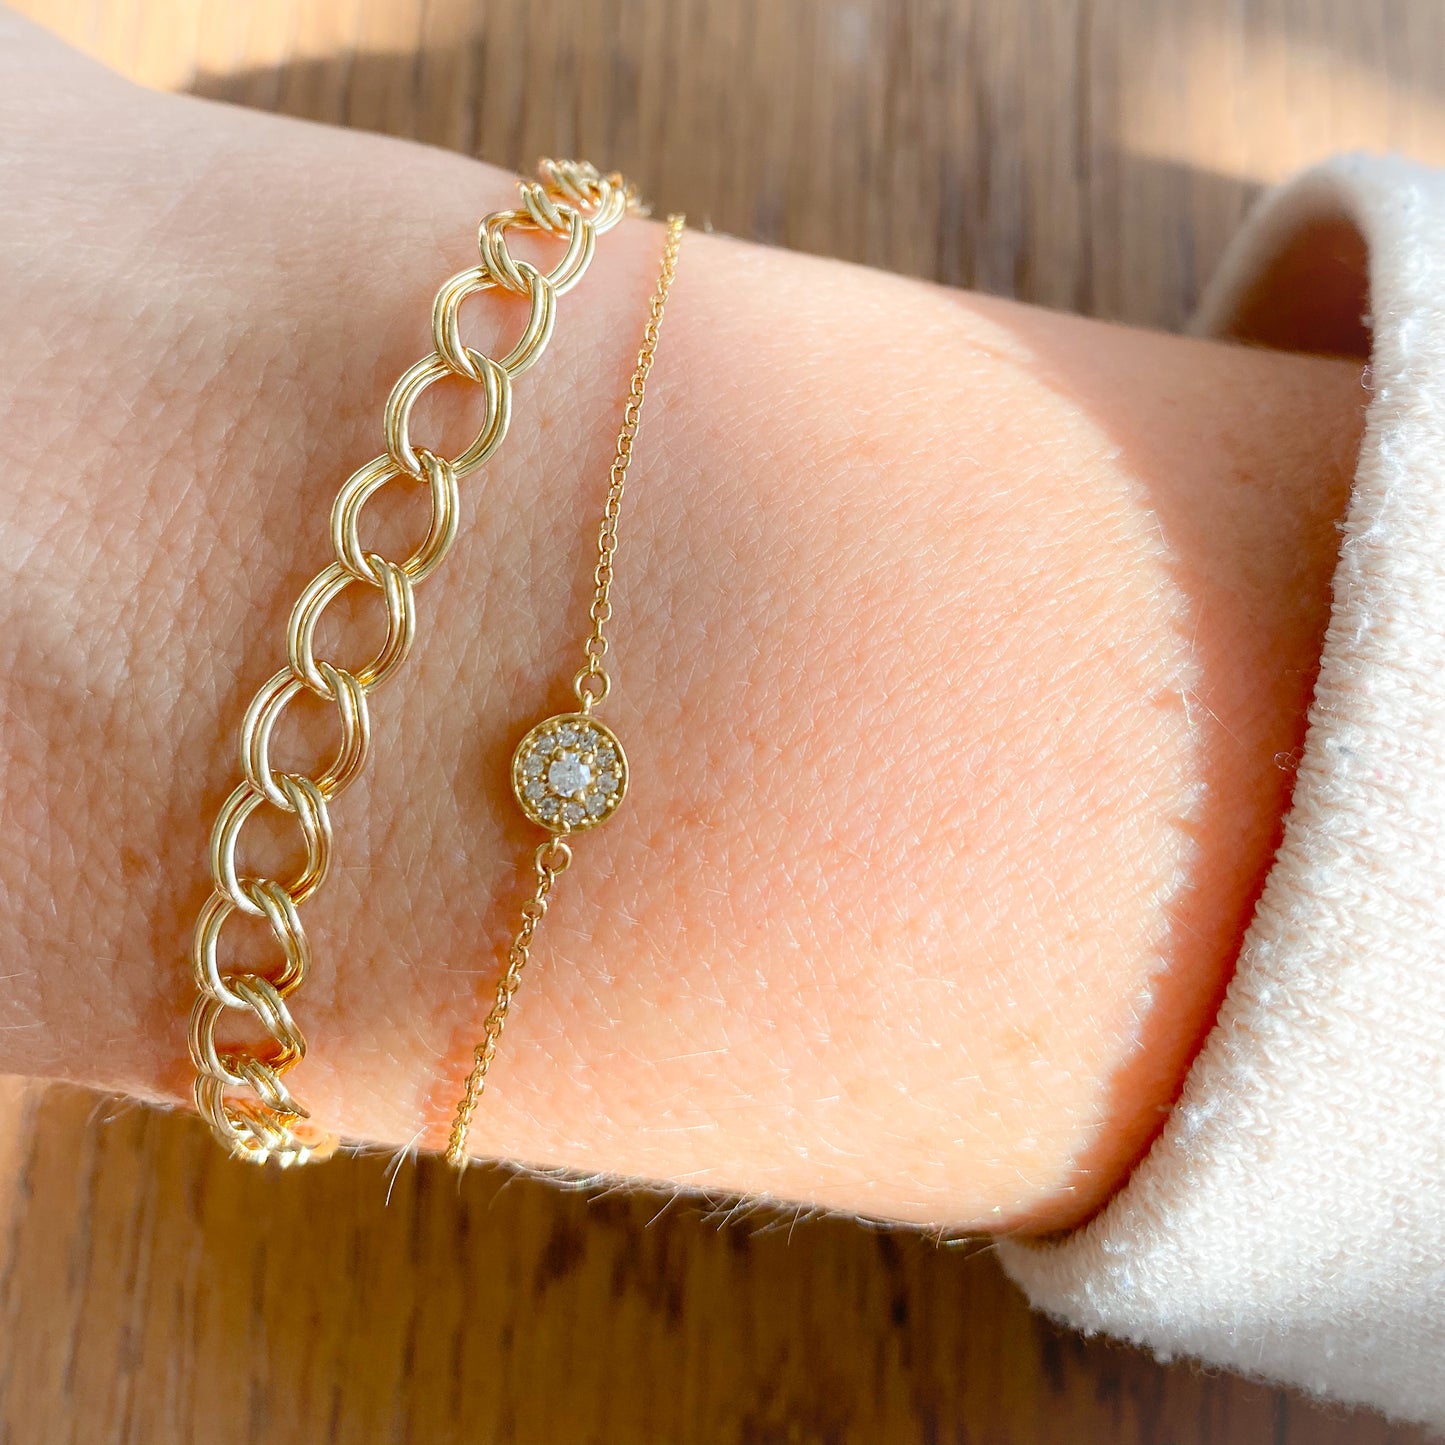 Noah Gold Double Link Bracelet - Bellestyle - 14KTGF waterproof gold chain